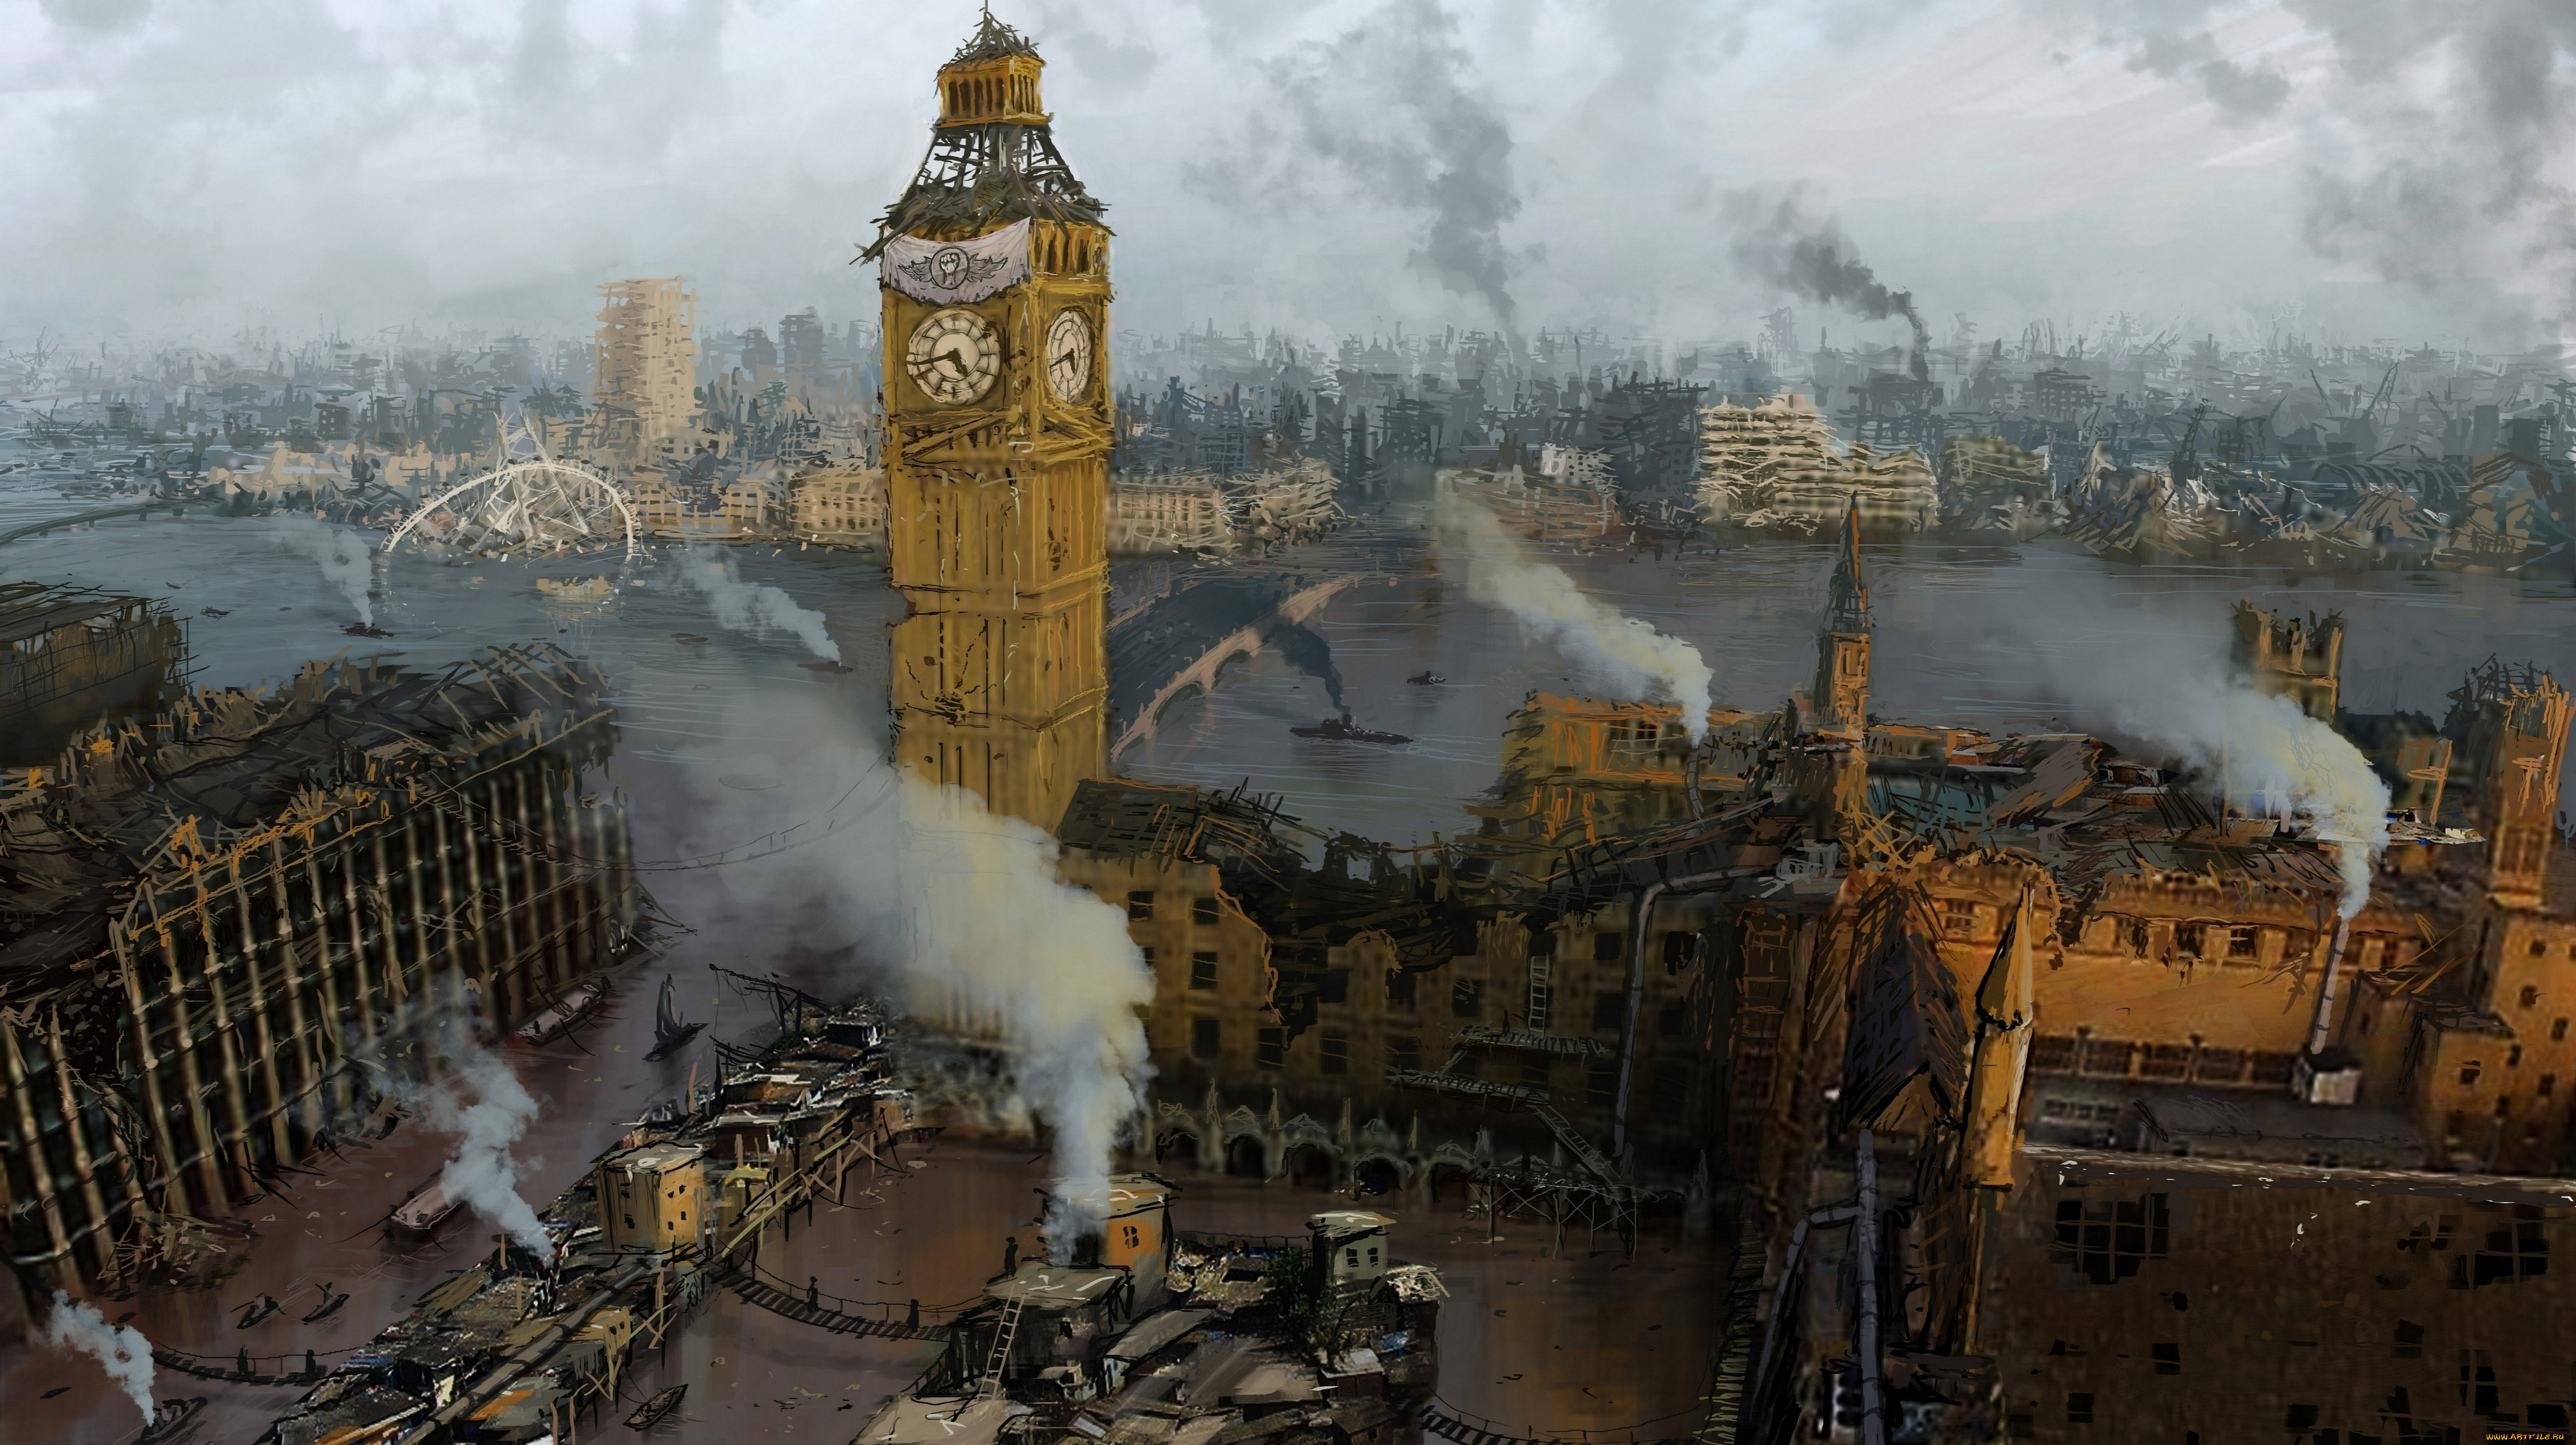 Окружающий мир после великой войны. Биг Бен до пожара 1834. Вестминстерский дворец до пожара 1834 года. Лондон 19 век Биг Бен. Вестминстерский дворец во время второй мировой войны.